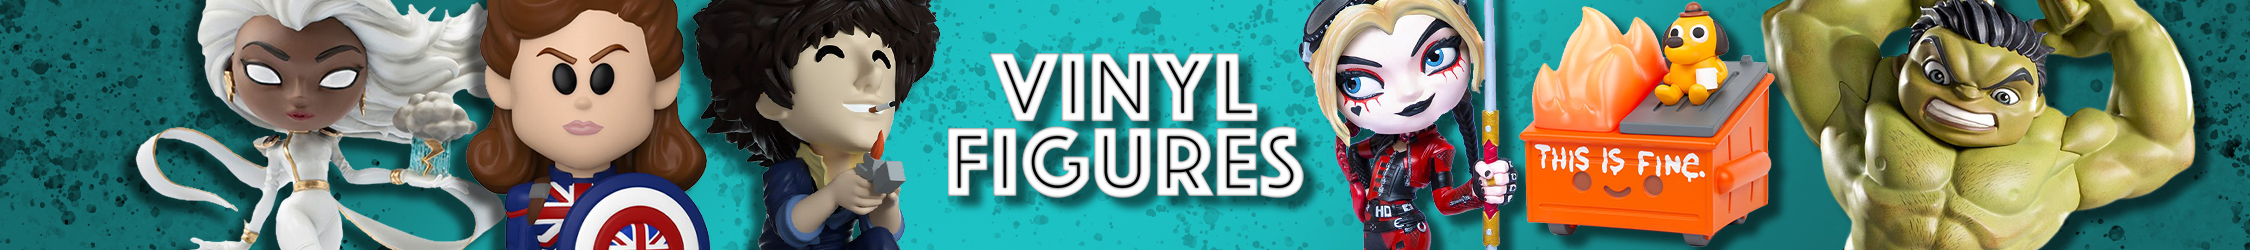 Vinyl Figures